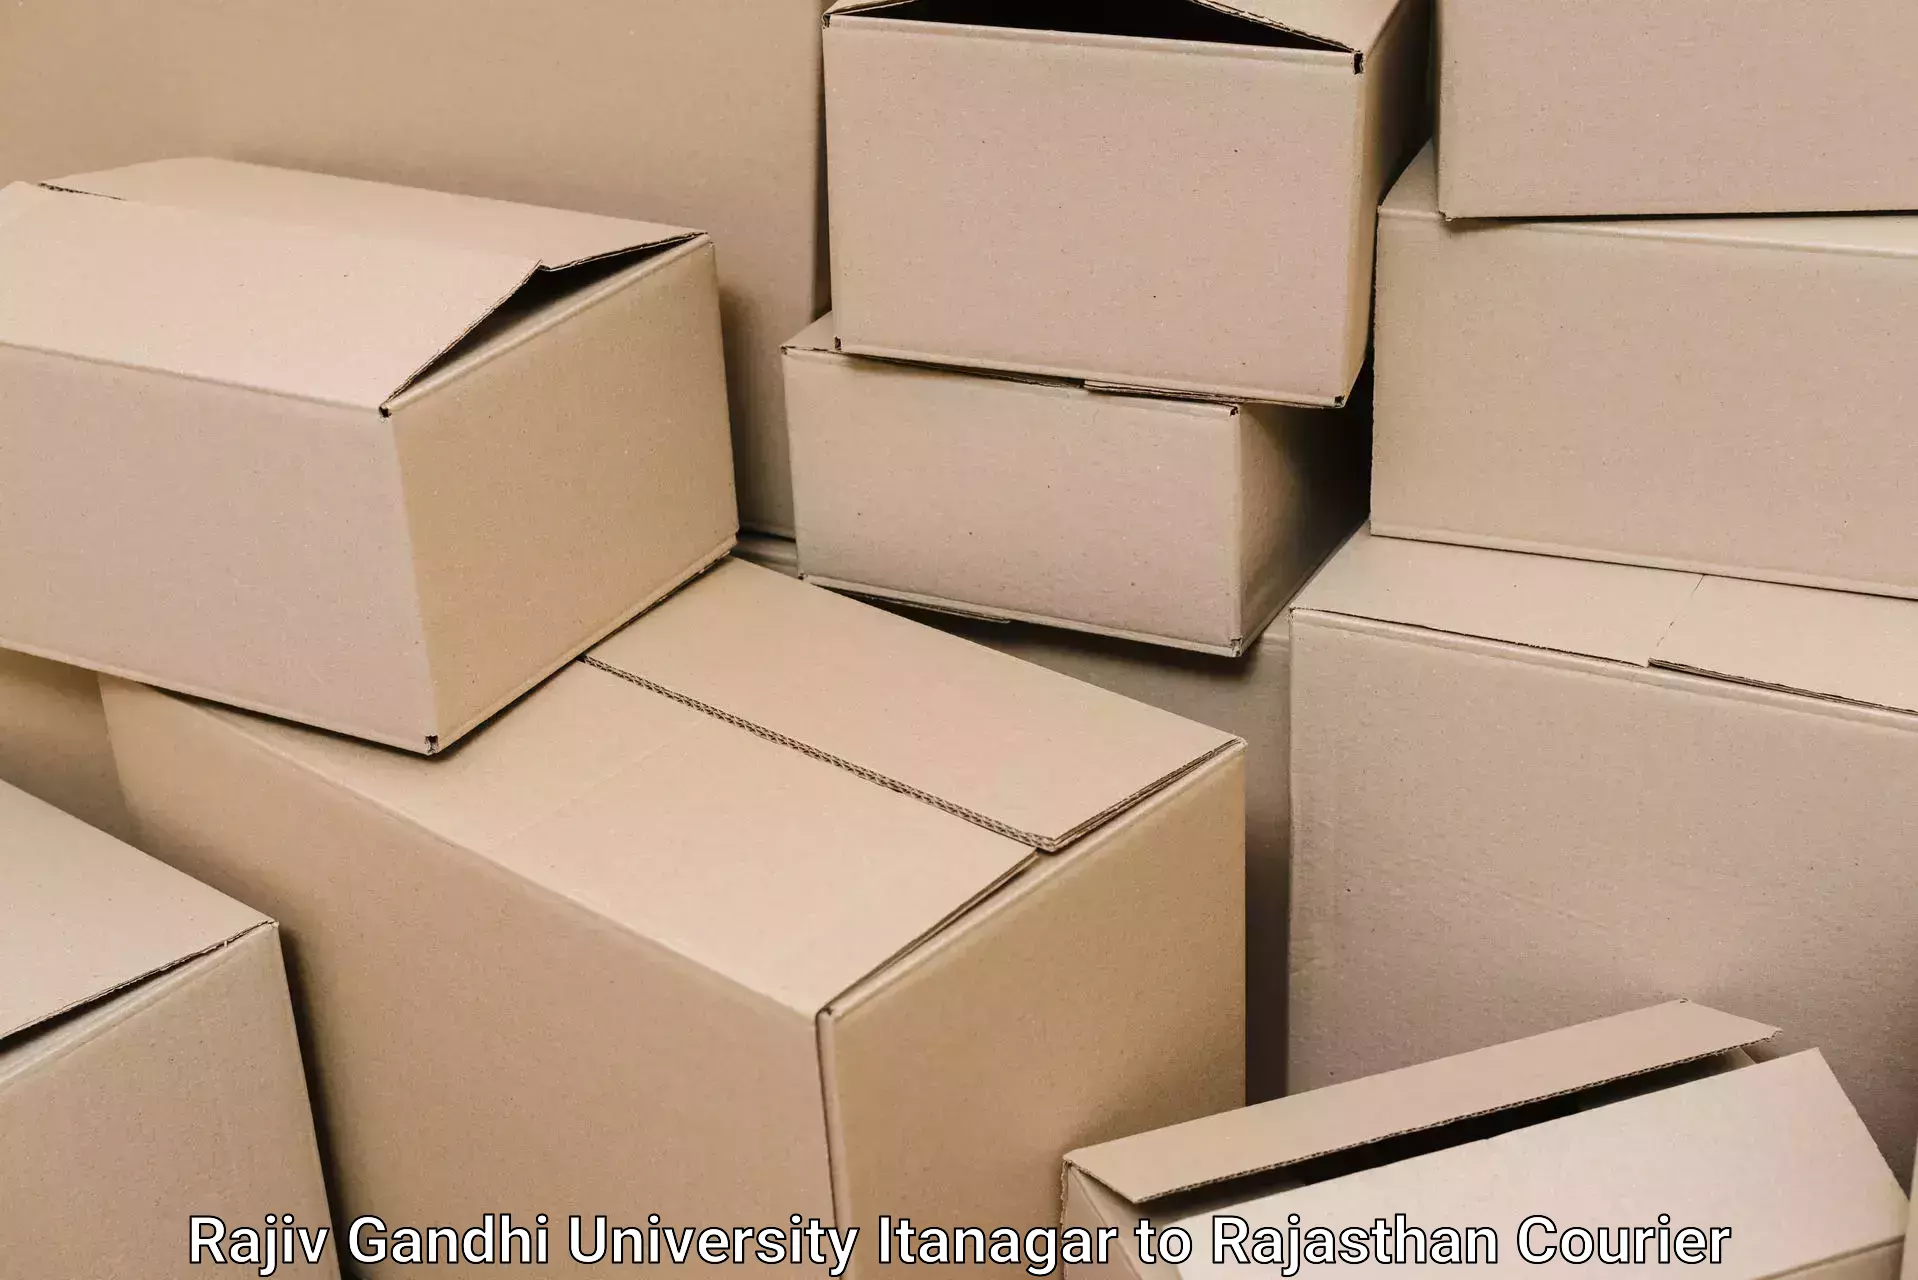 Furniture moving plans Rajiv Gandhi University Itanagar to Laxmangarh